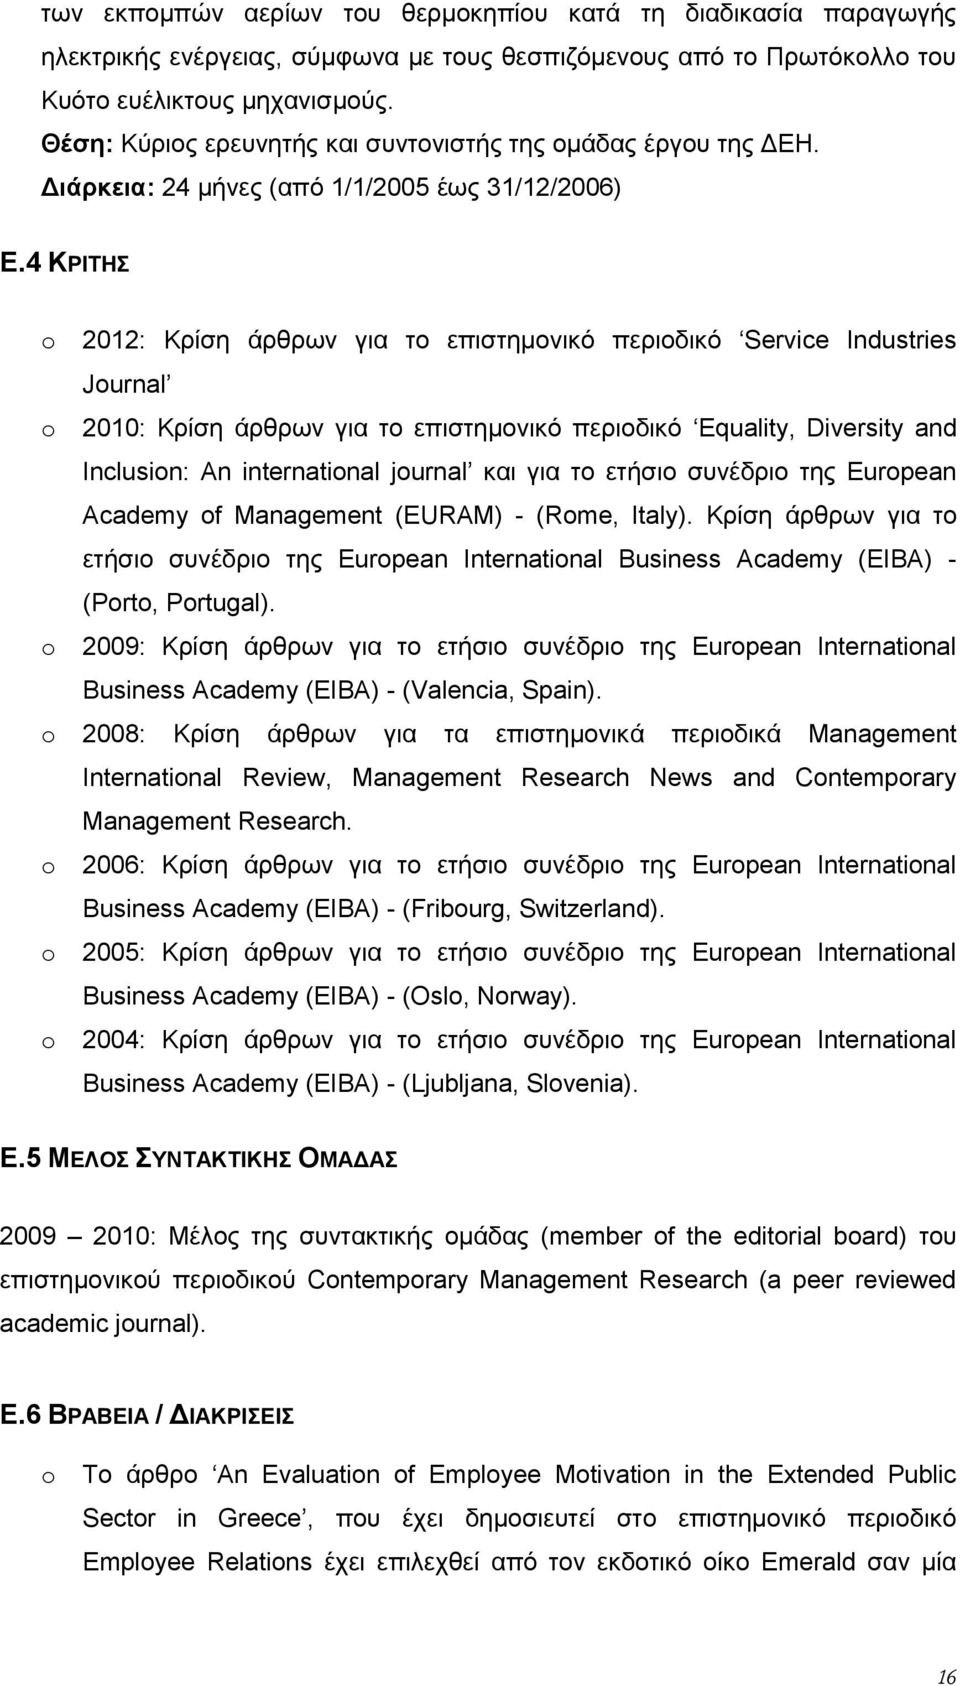 4 ΚΡΙΤΗΣ o 2012: Κρίση άρθρων για το επιστημονικό περιοδικό Service Industries Journal o 2010: Κρίση άρθρων για το επιστημονικό περιοδικό Equality, Diversity and Inclusion: An international journal